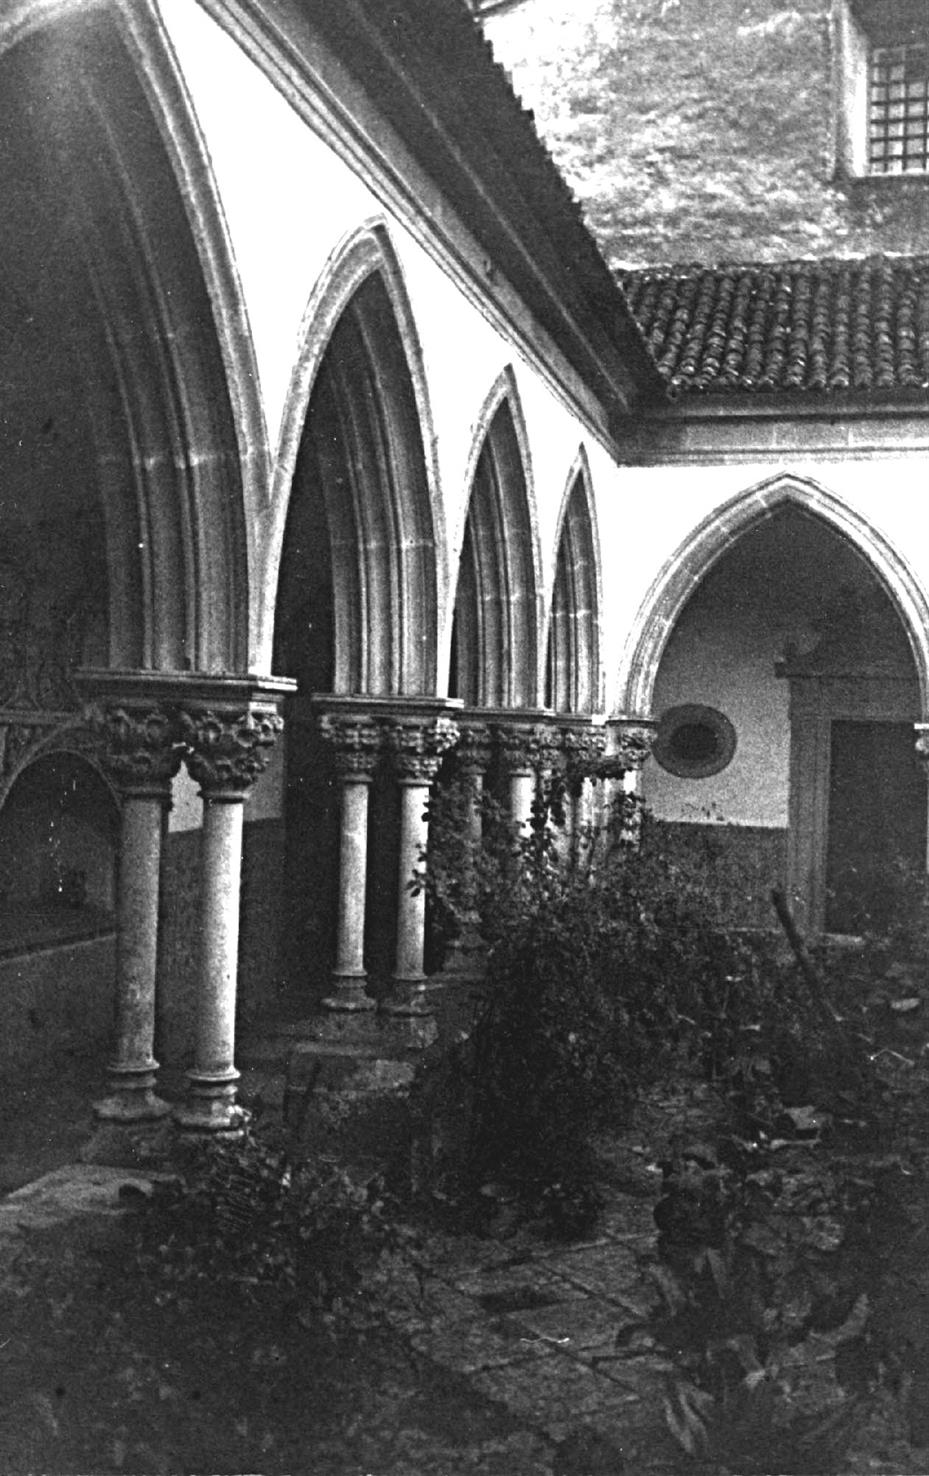 Tomar : claustro do cemitério do Convento de Cristo